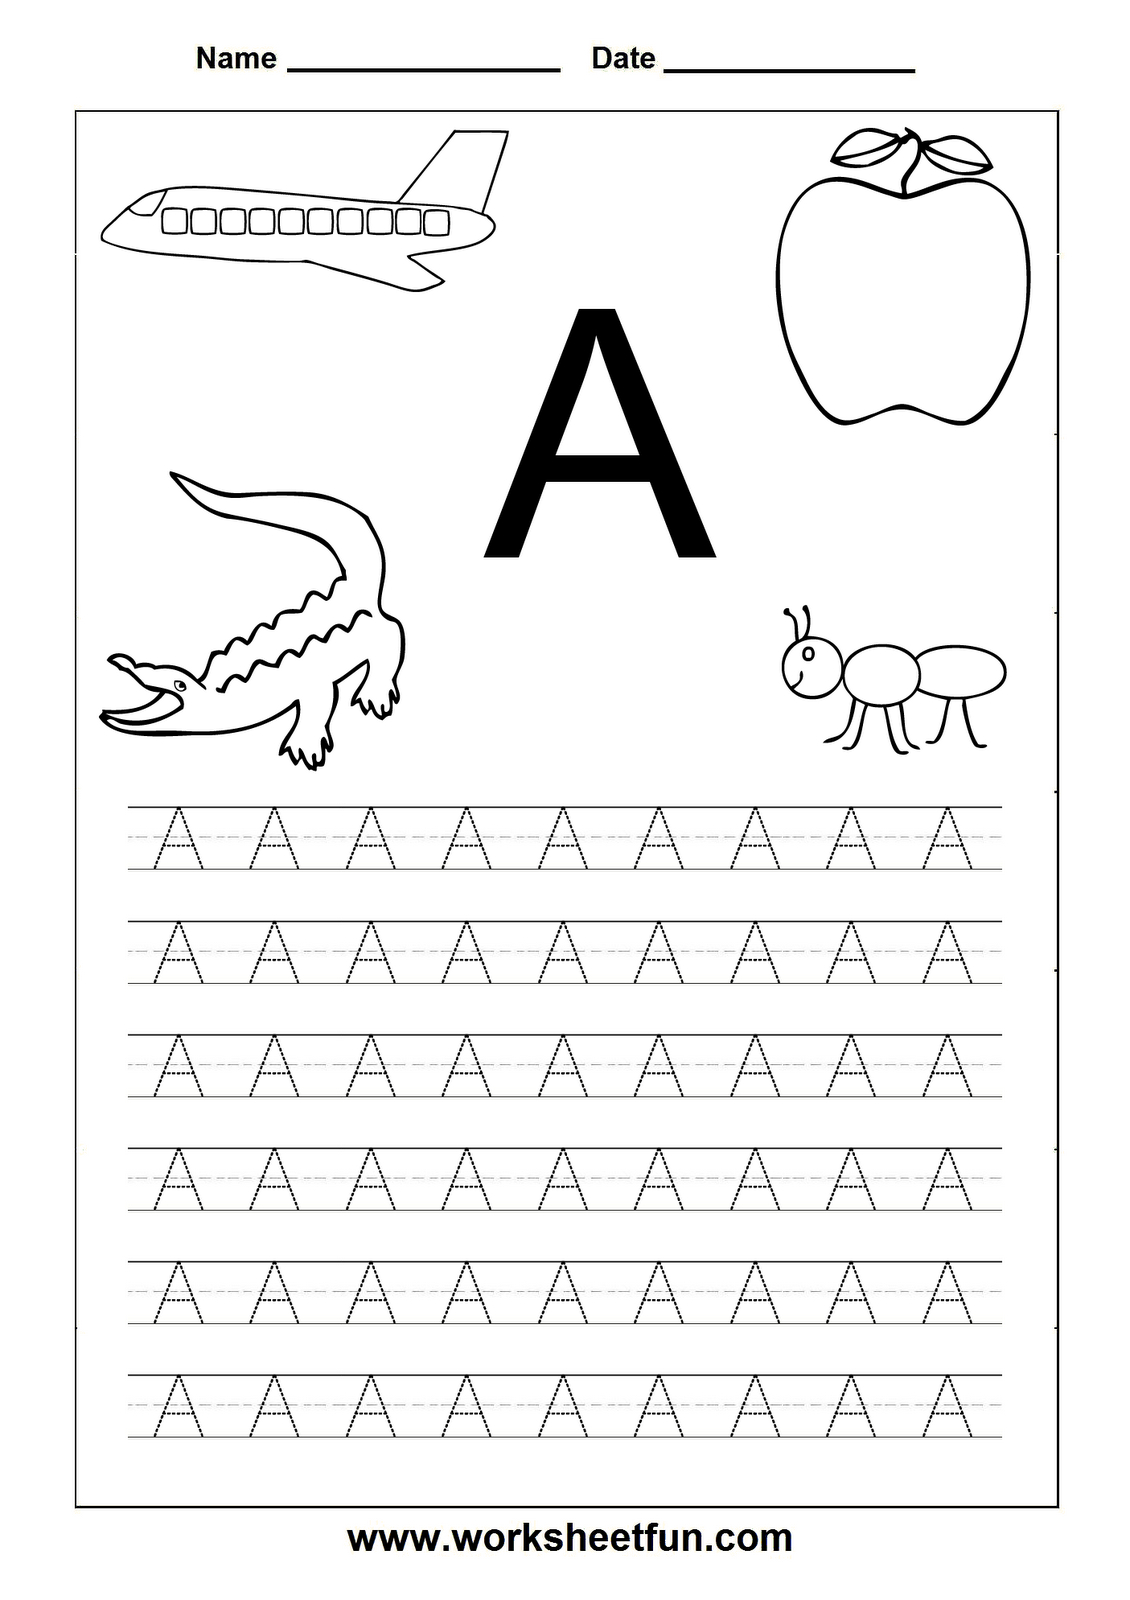 Letter Worksheets For Kindergarten Printable | Alphabet intended for Letter I Tracing Worksheets For Kindergarten